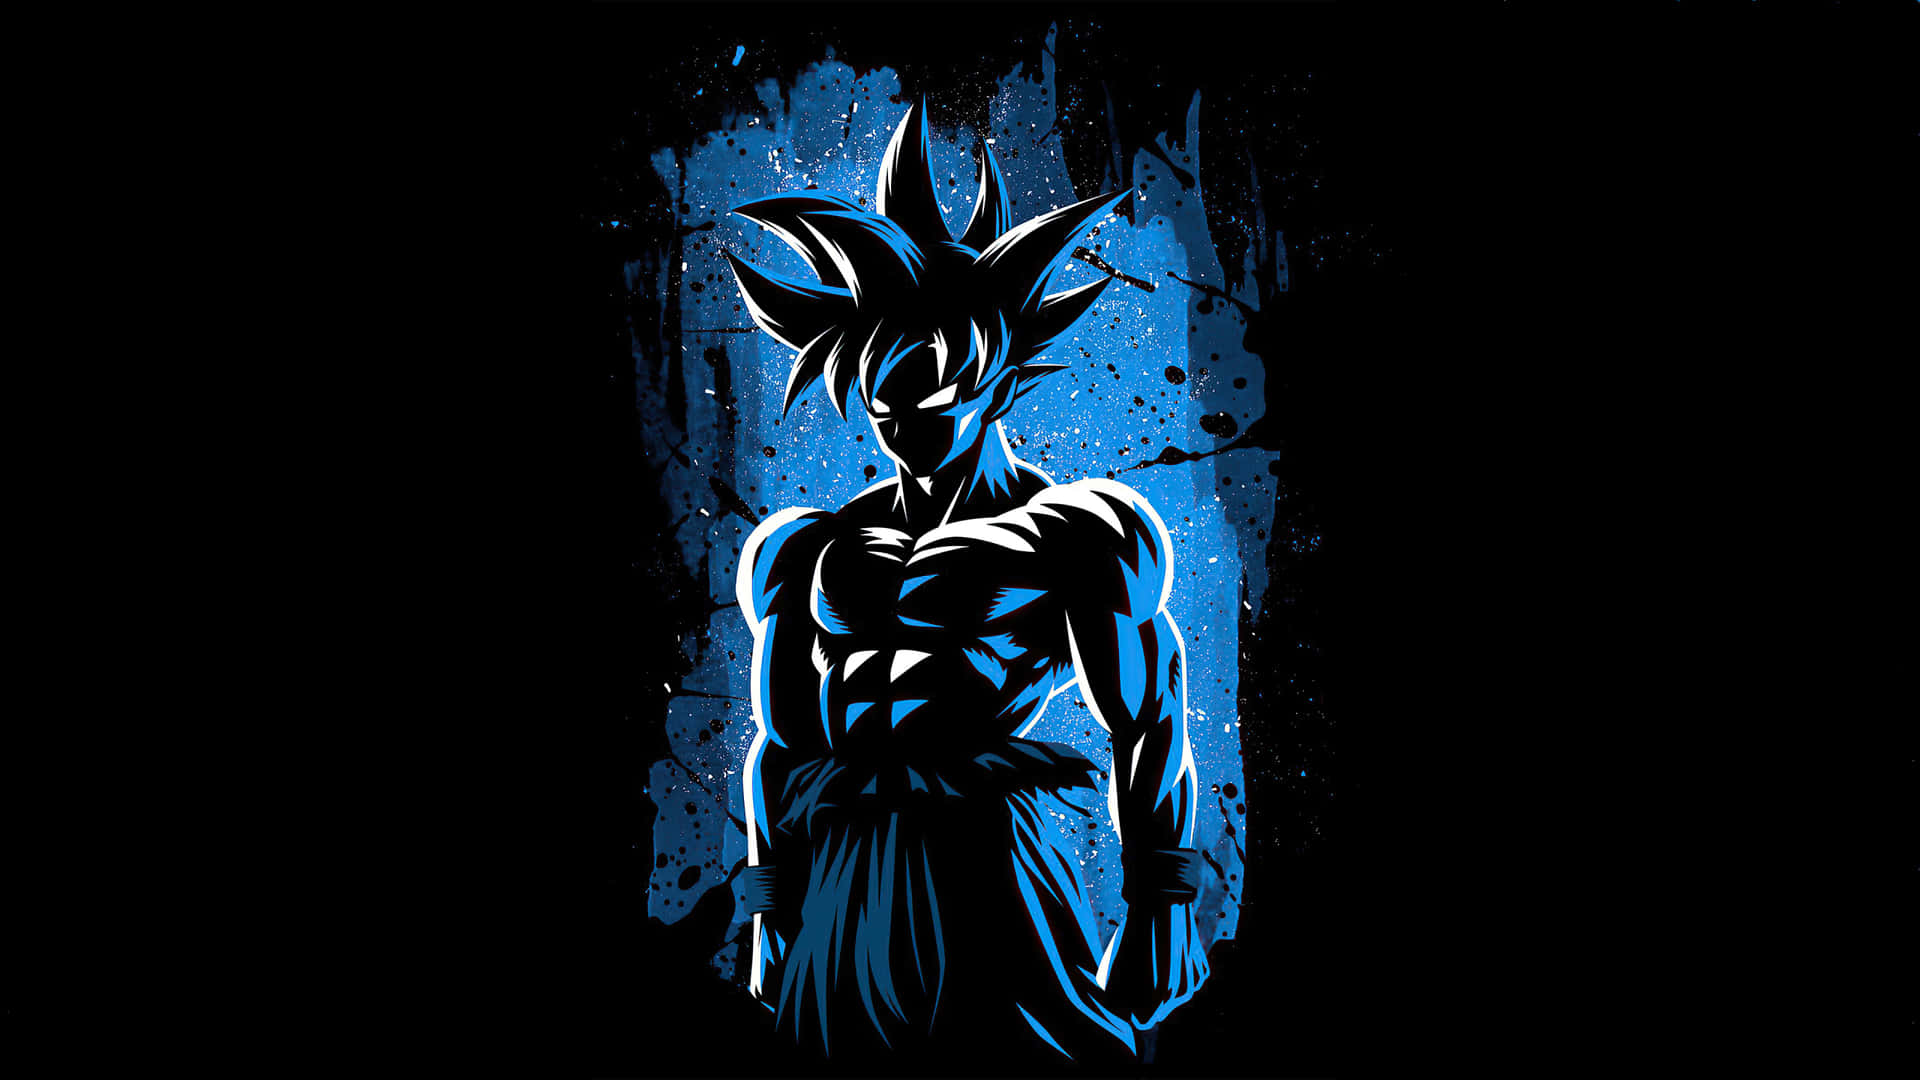 Goku Blue Graphic 1440p AMOLED Background